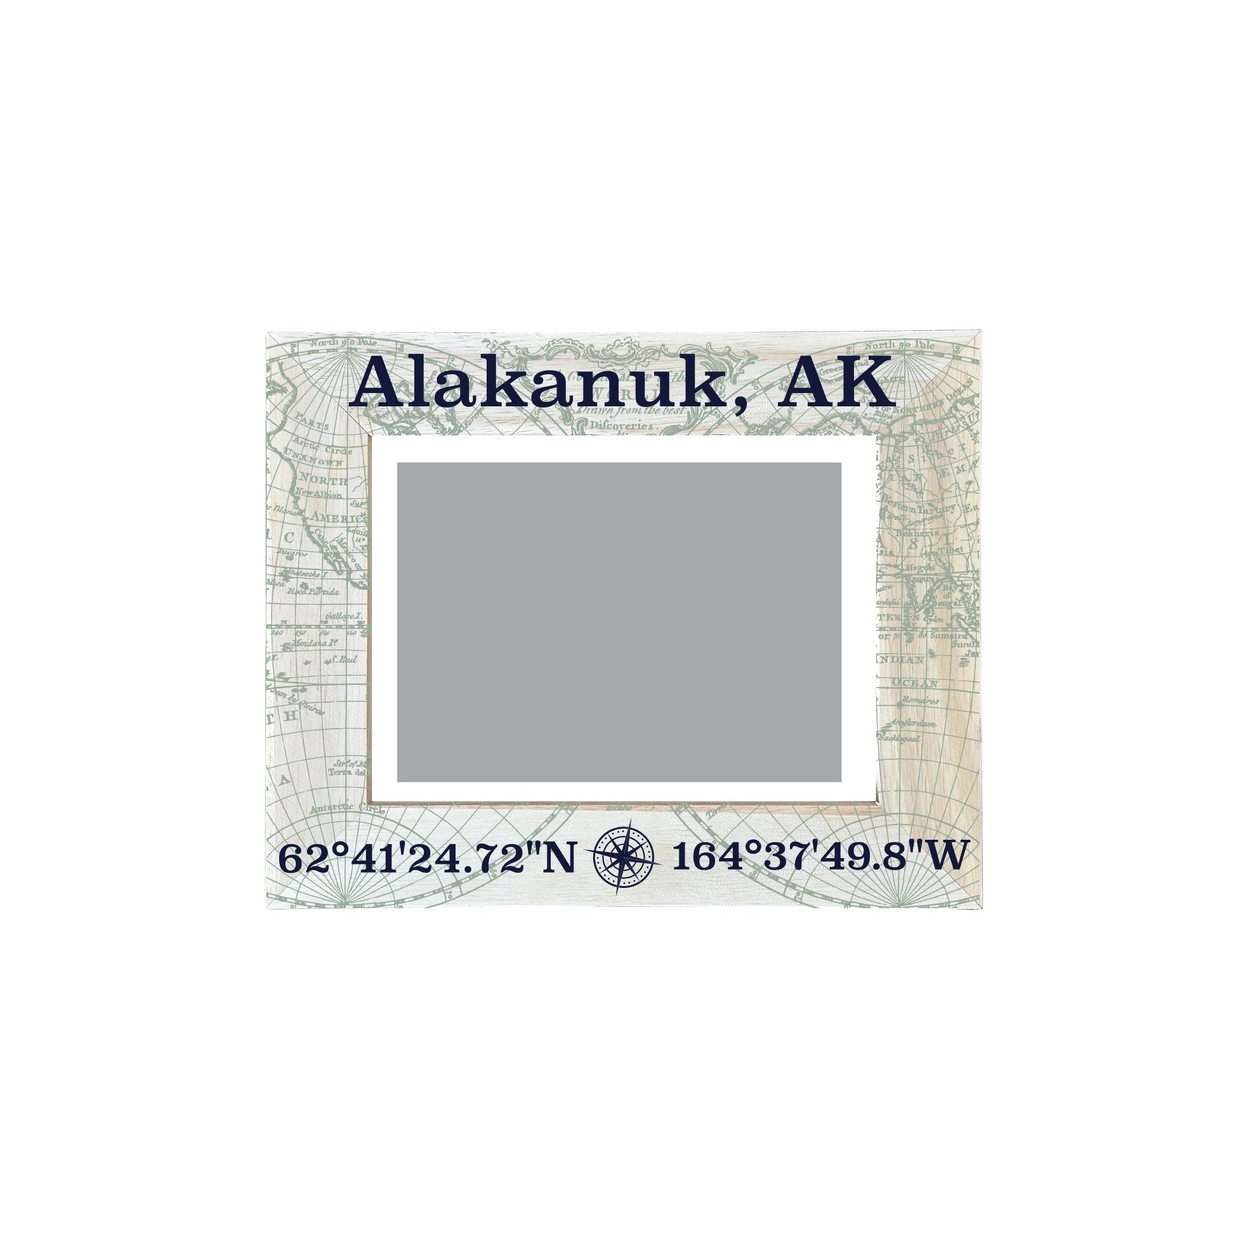 Alakanuk Alaska Souvenir Wooden Photo Frame Compass Coordinates Design Matted To 4 X 6